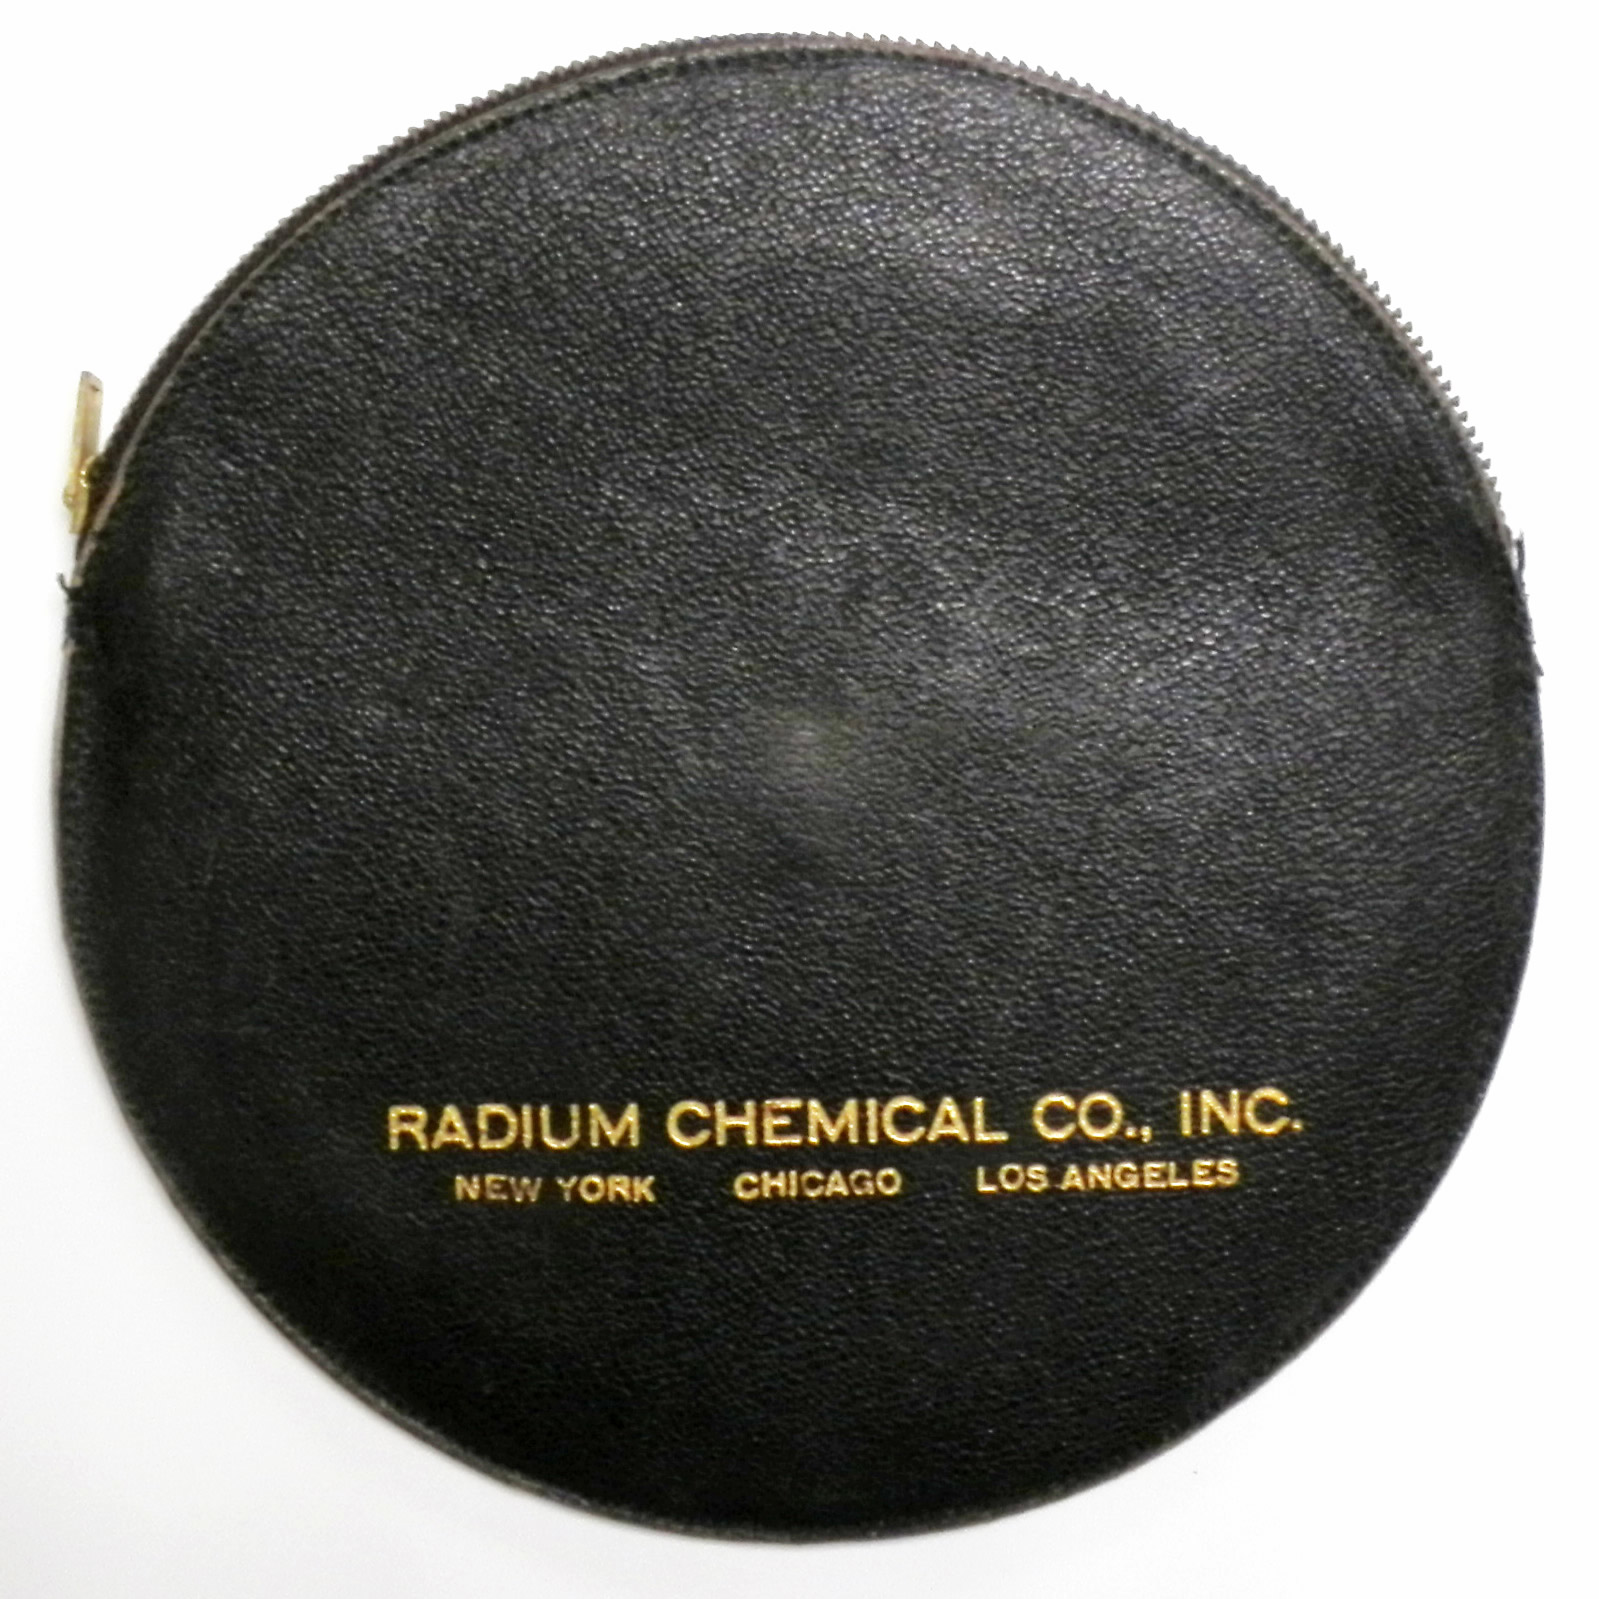 Radium Chemical Co. Exposure Calculator (1940s)